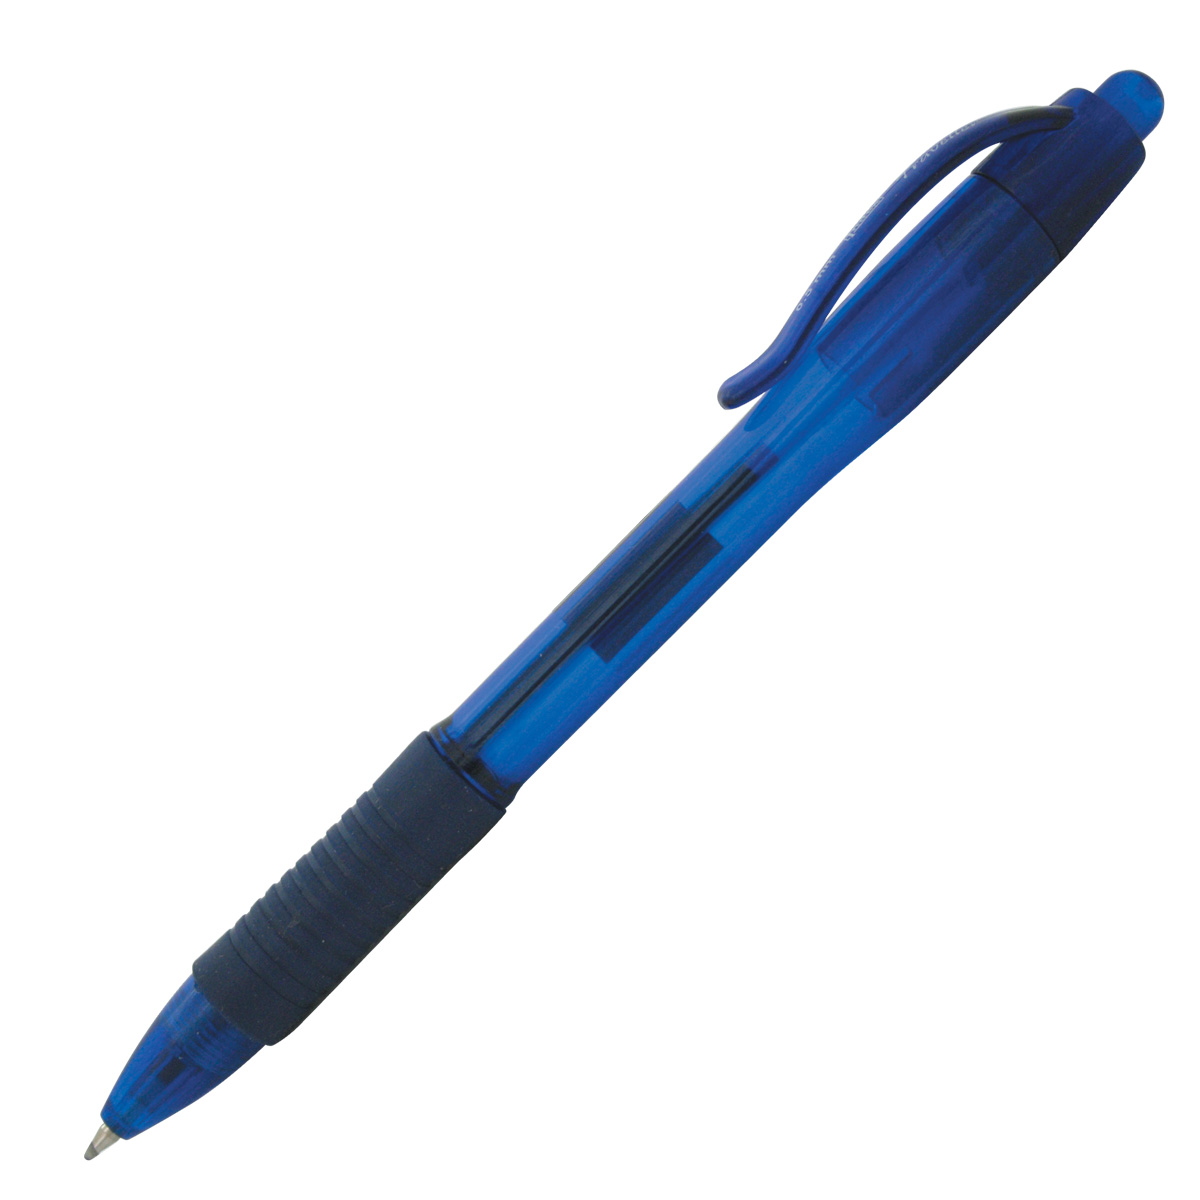 Ручка синяя красивая. Ручка гелевая синяя 0.7 Index icbp600/bu. Ручка шариковая автоматическая синяя (толщина линии 0,7мм). Гелевая ручка Берлинго синяя автоматическая.